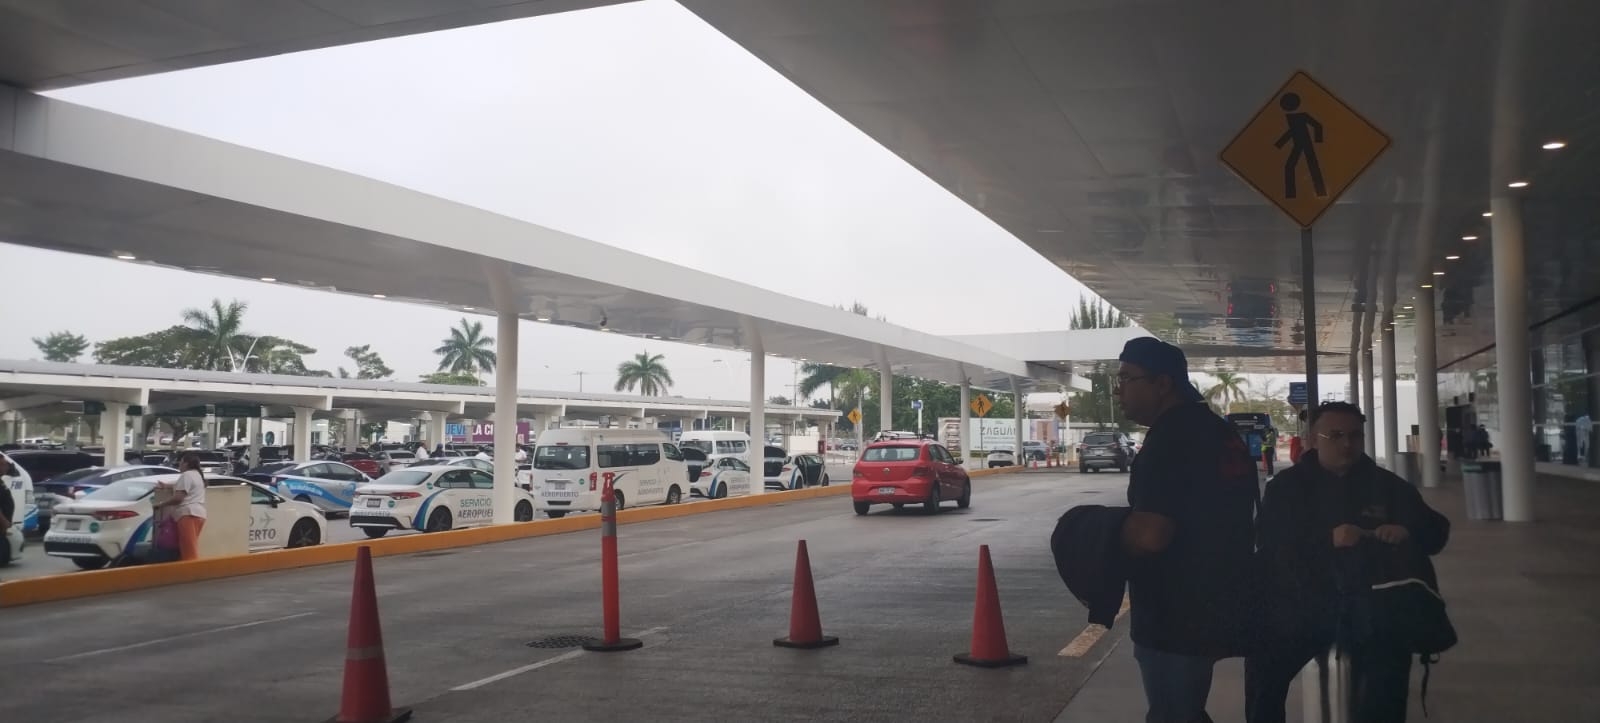 Neblina en la pista causa retrasos en el aeropuerto de Mérida